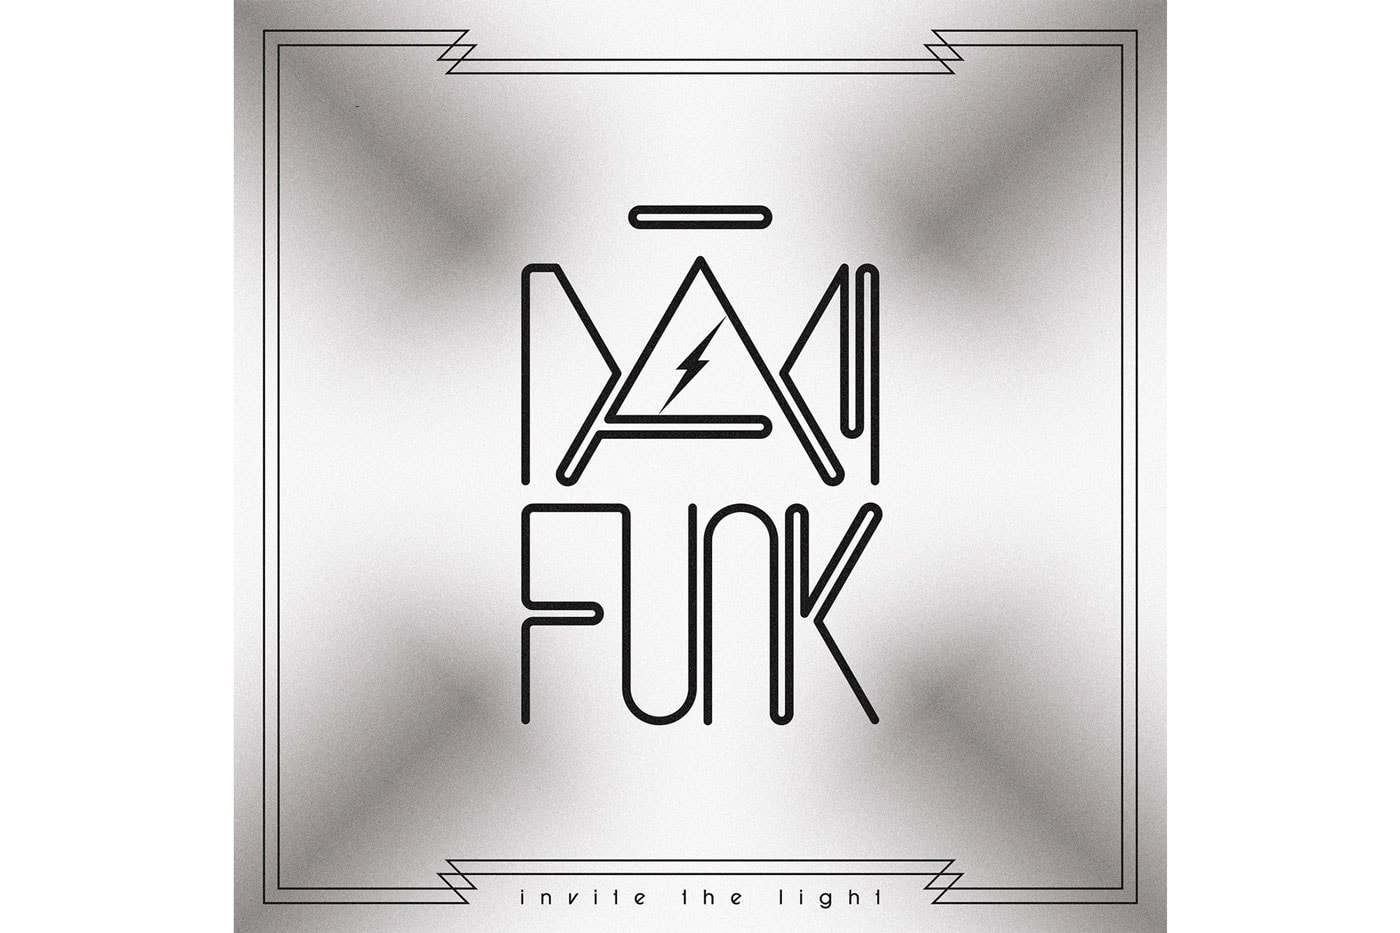 Dam-Funk - Invite the Light (Album Stream)